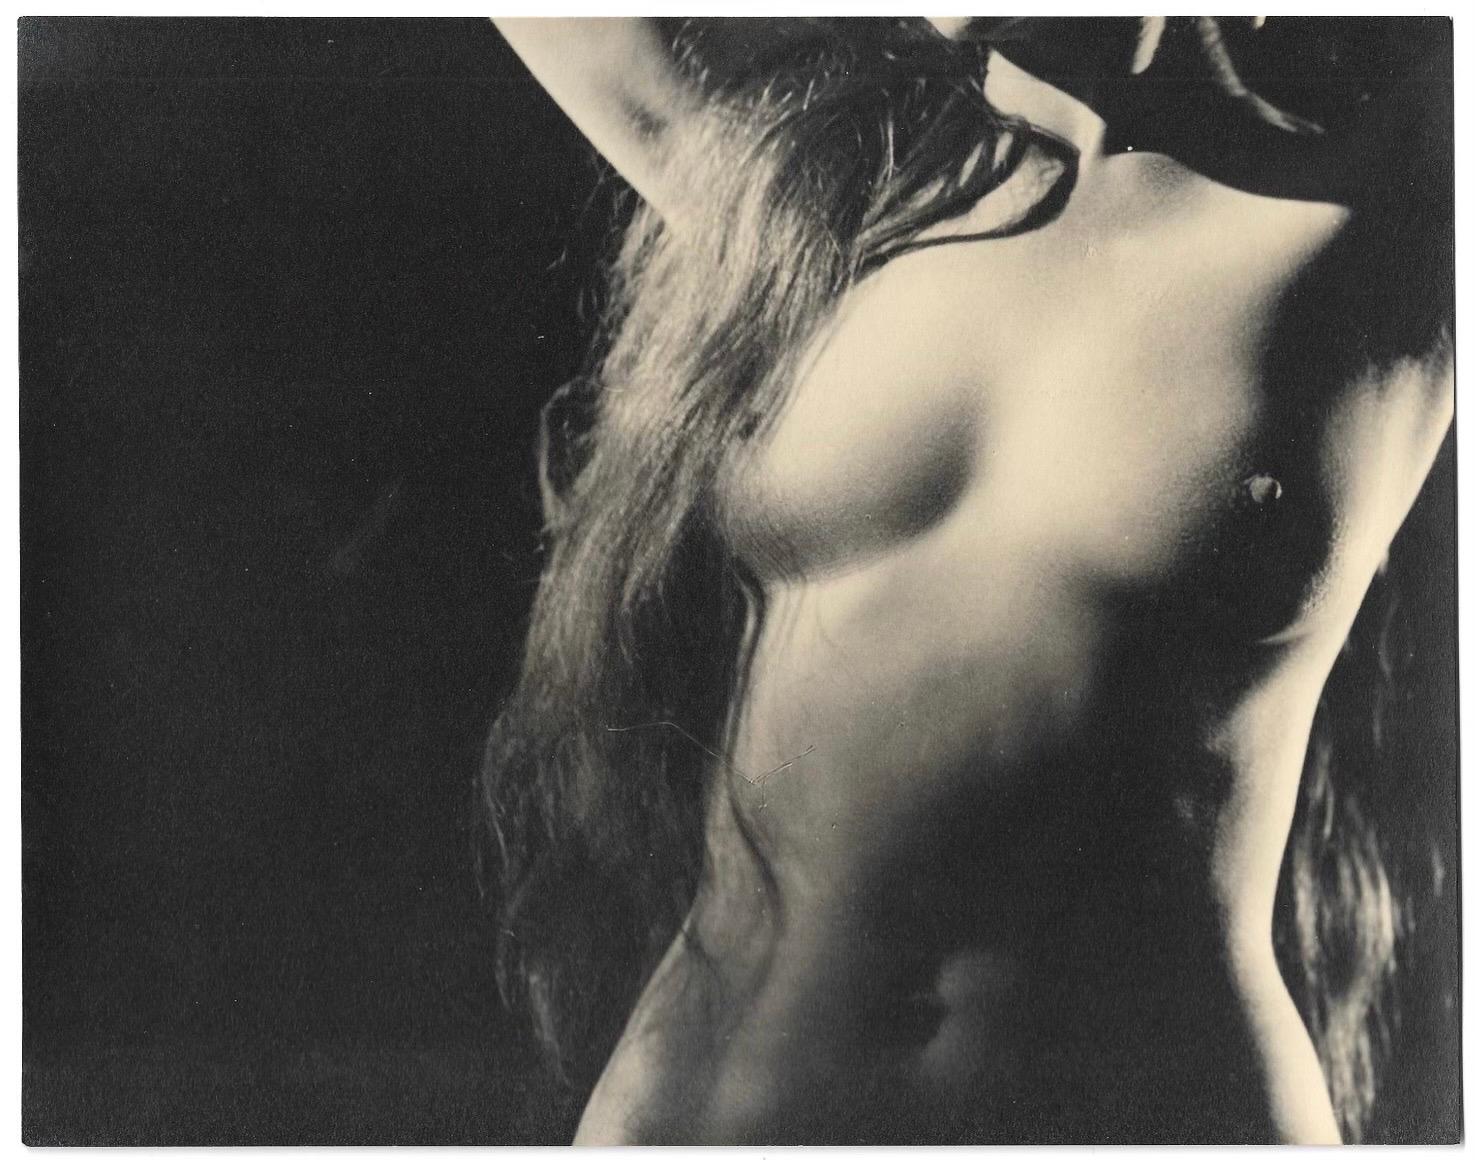 Dan O'Neill Nude Photograph – Schwarz-Weiß-Fotografie eines weiblichen Akts der zeitgenössischen amerikanischen Fotografin